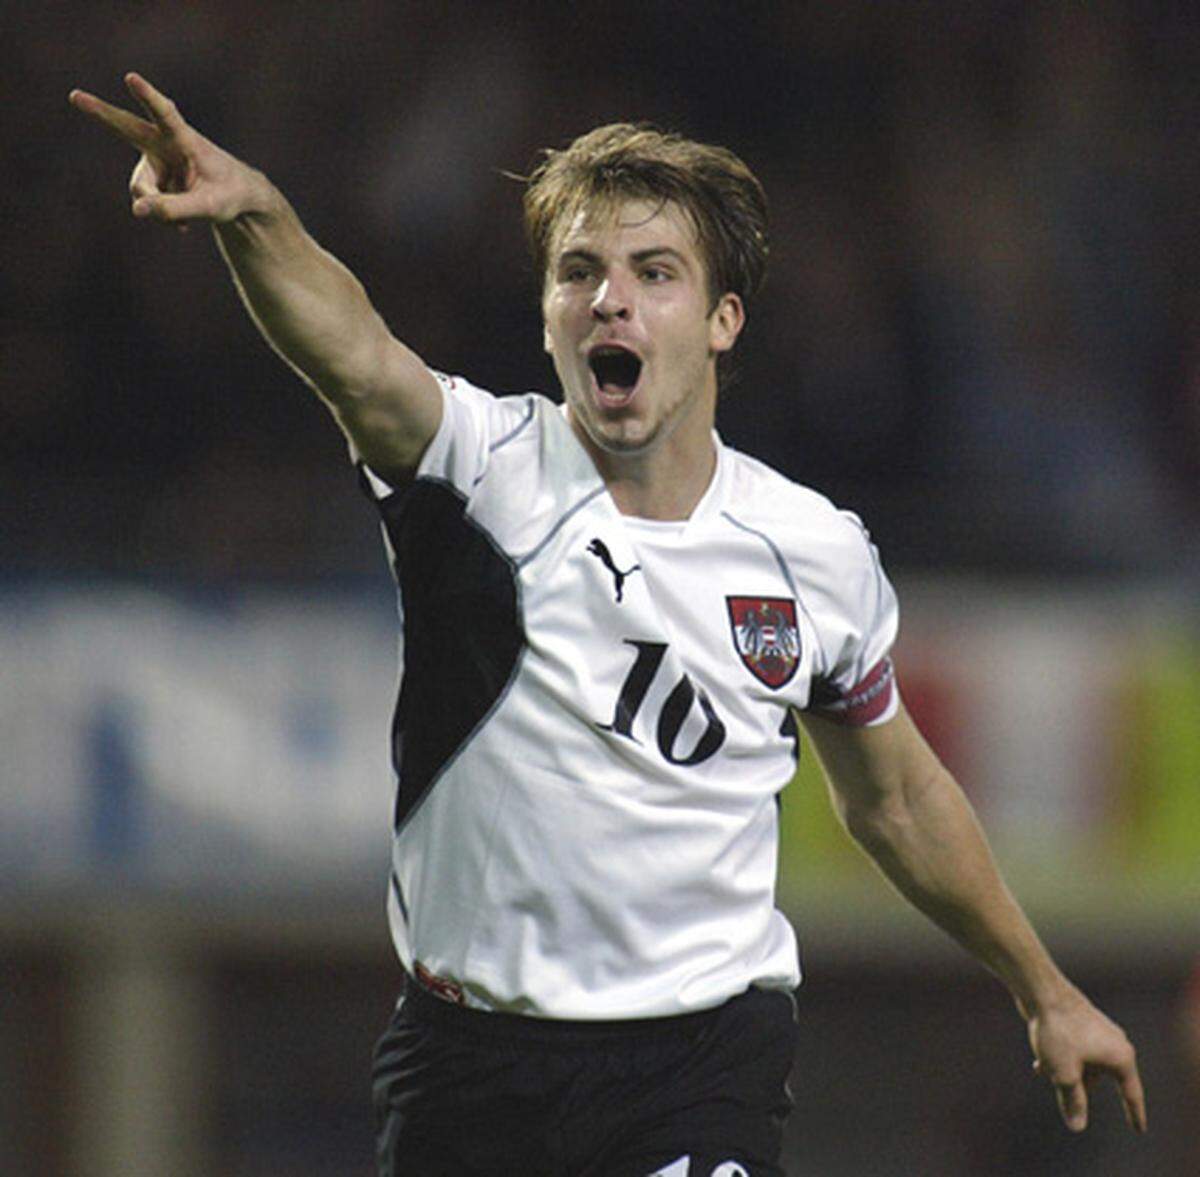 In der Saison 2002/03 war Ivanschitz Stammspieler bei Rapid und war in allen 36 Ligapartien im Einsatz. Österreichs Teamchef Hans Krankl holte ihn 2003 ins Nationalteam, wo er im März gegen Griechenland debütierte, im Oktober gegen Tschechien war er bereits Kapitän - der jüngste in der ÖFB-Nachkriegsgeschichte.